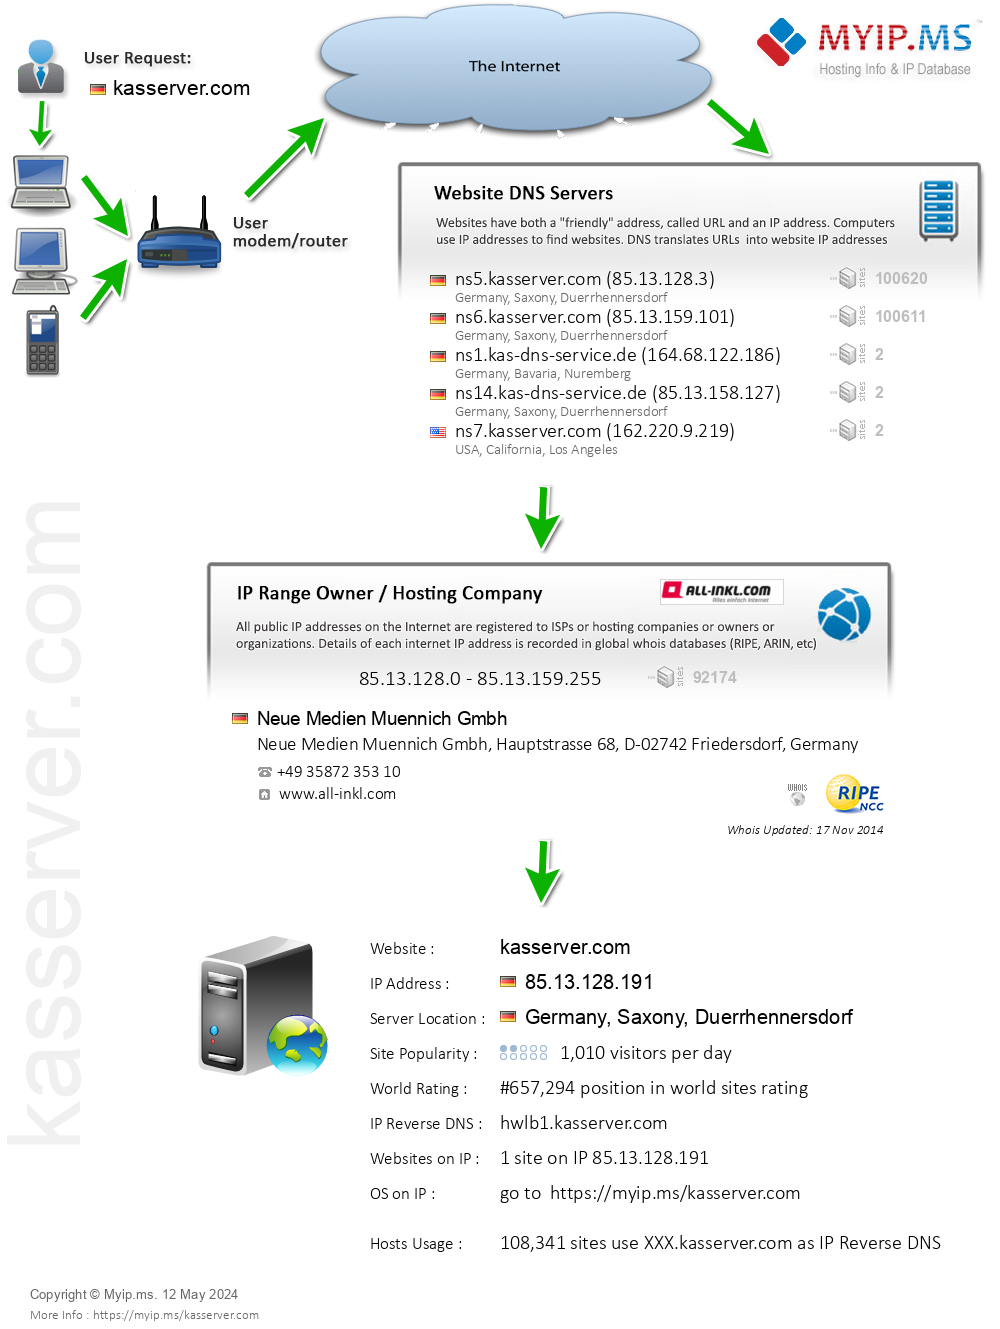 Kasserver.com - Website Hosting Visual IP Diagram